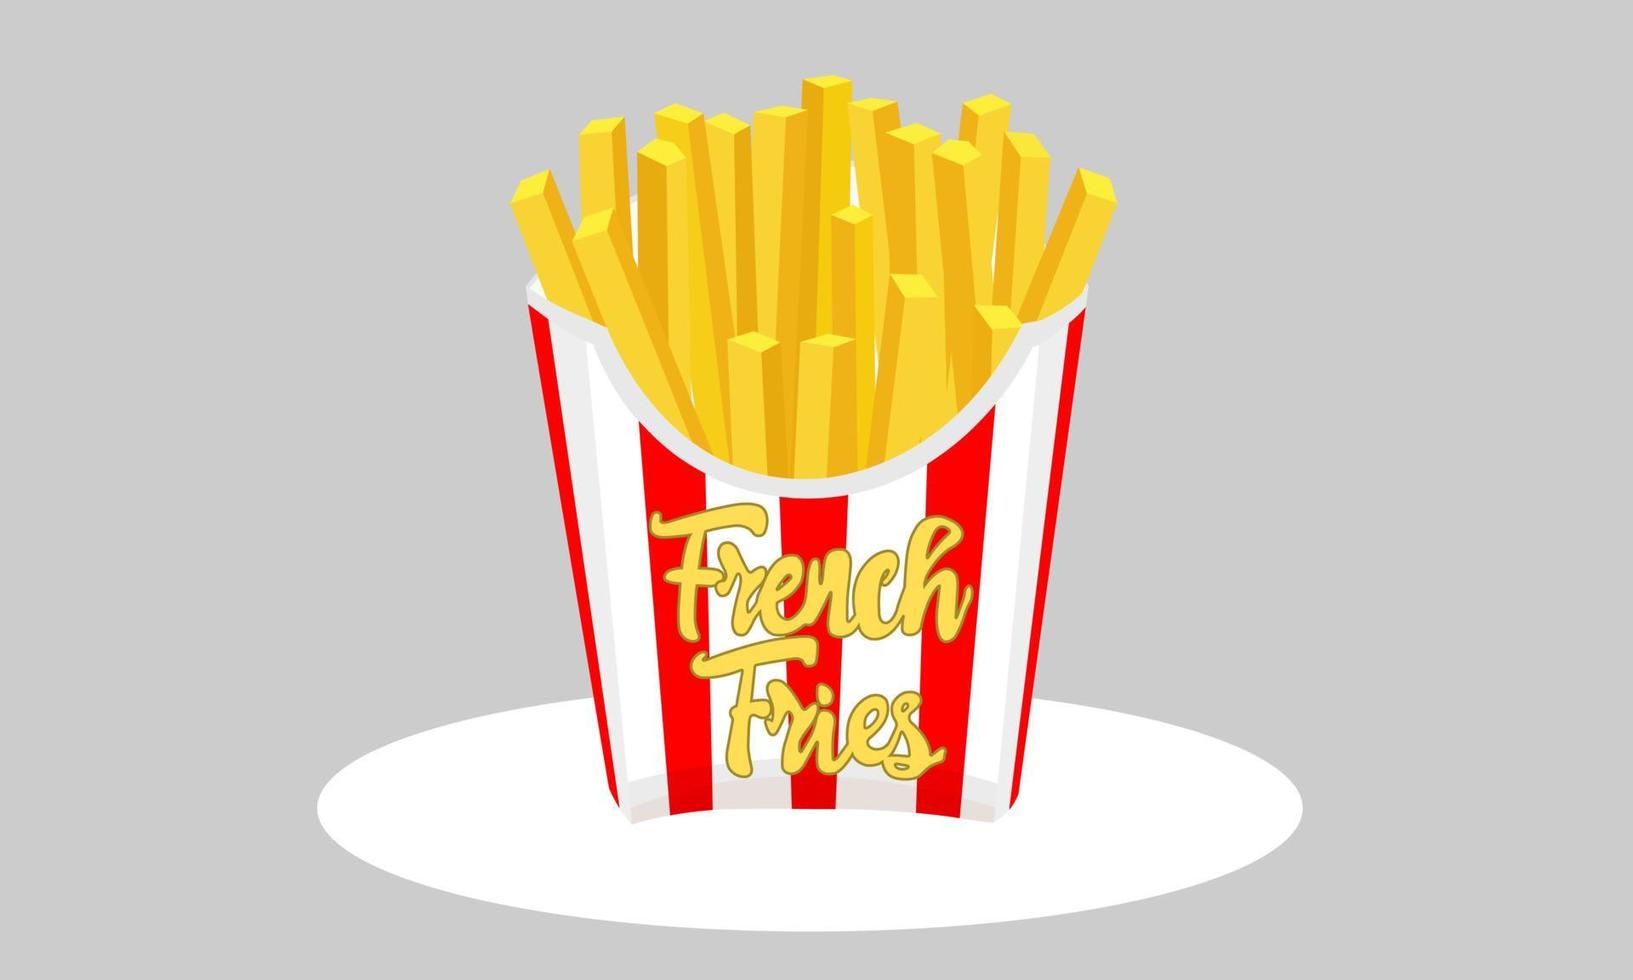 papas fritas grandes comida rápida. papas fritas en caja de papel a rayas rojas y blancas. diseño plano de la caja de embalaje de patatas fritas. vector